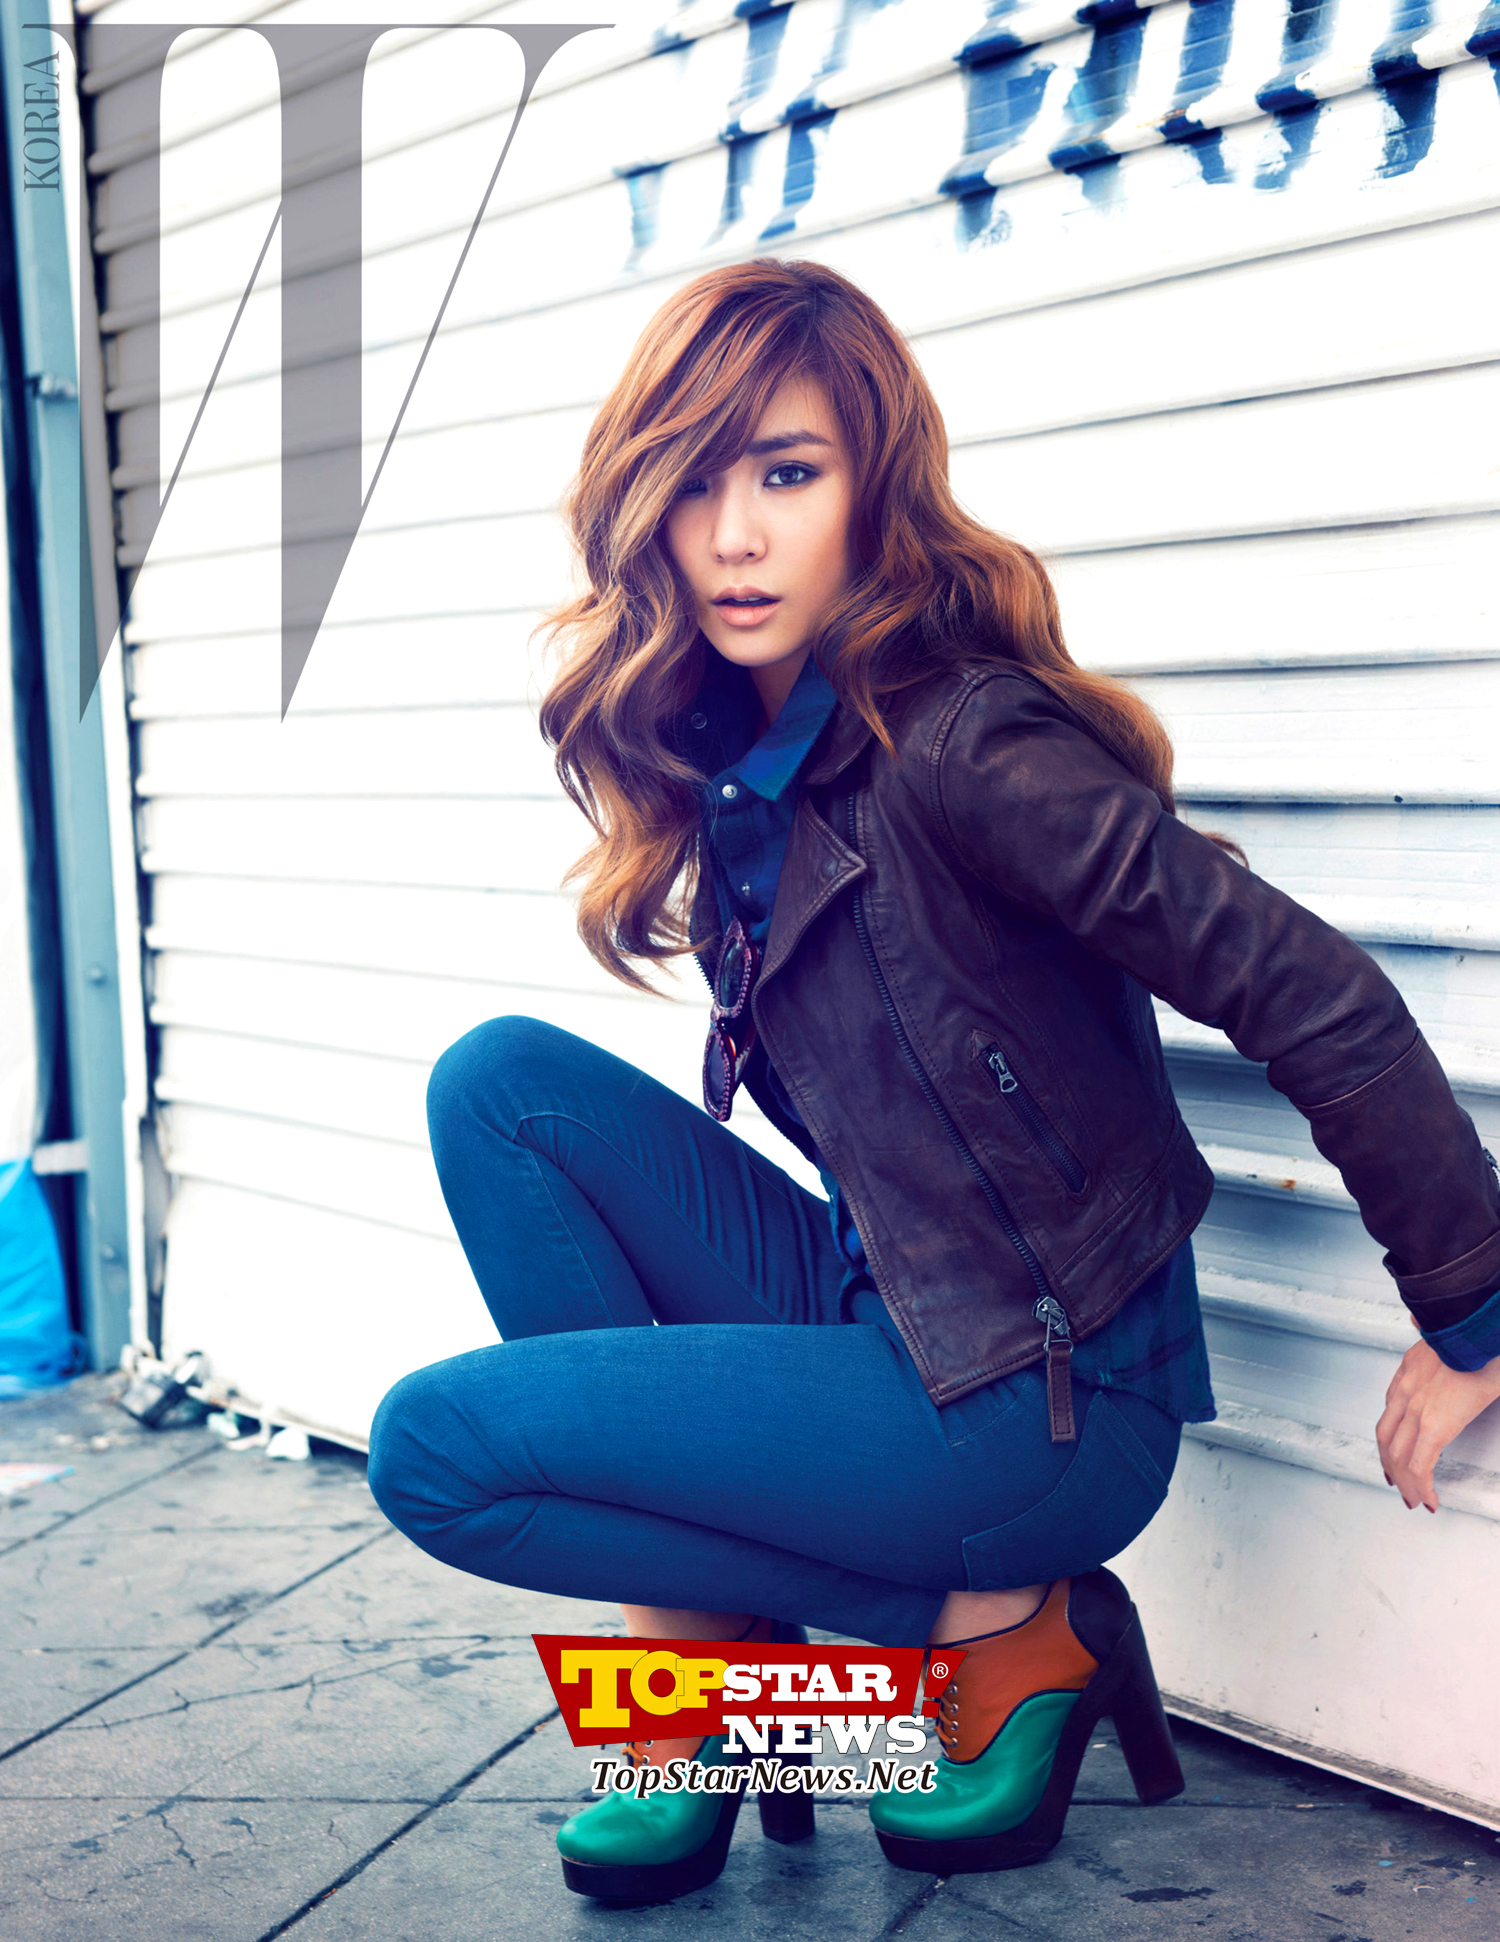 [PIC][19-09-2012]Tiffany xuất hiện trên ấn phẩm tháng 10 của tạp chí "W Korea" 1616A141505ADF5409E96A